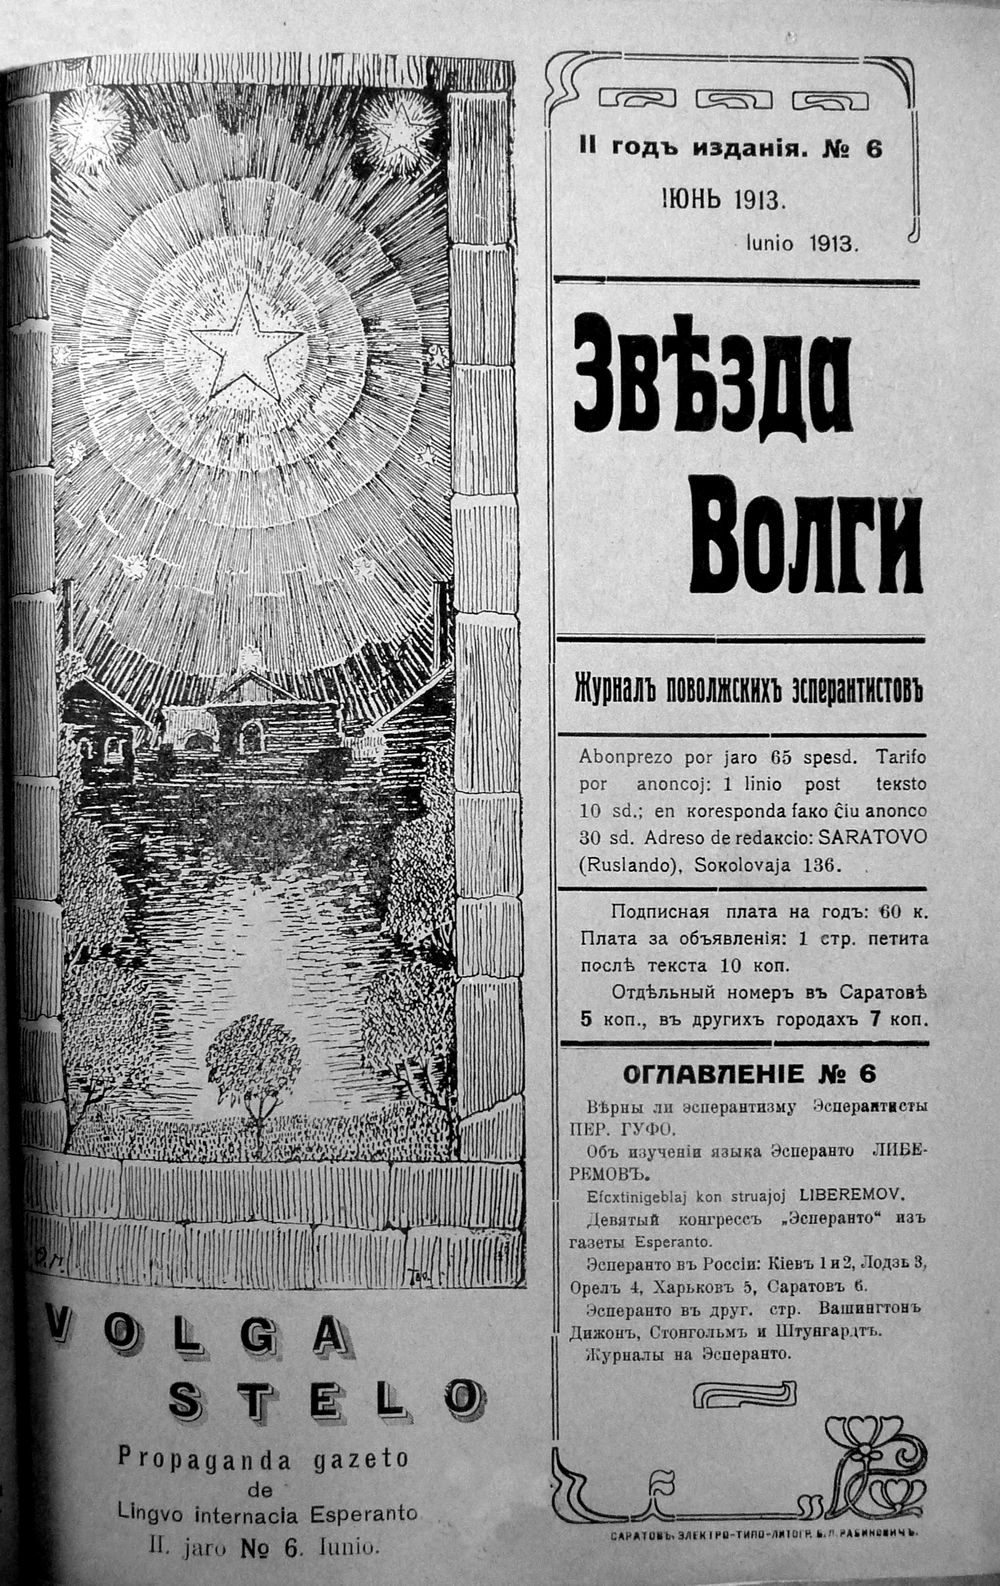 Обложка журнала поволжских эсперантистов «Volga Stelo»